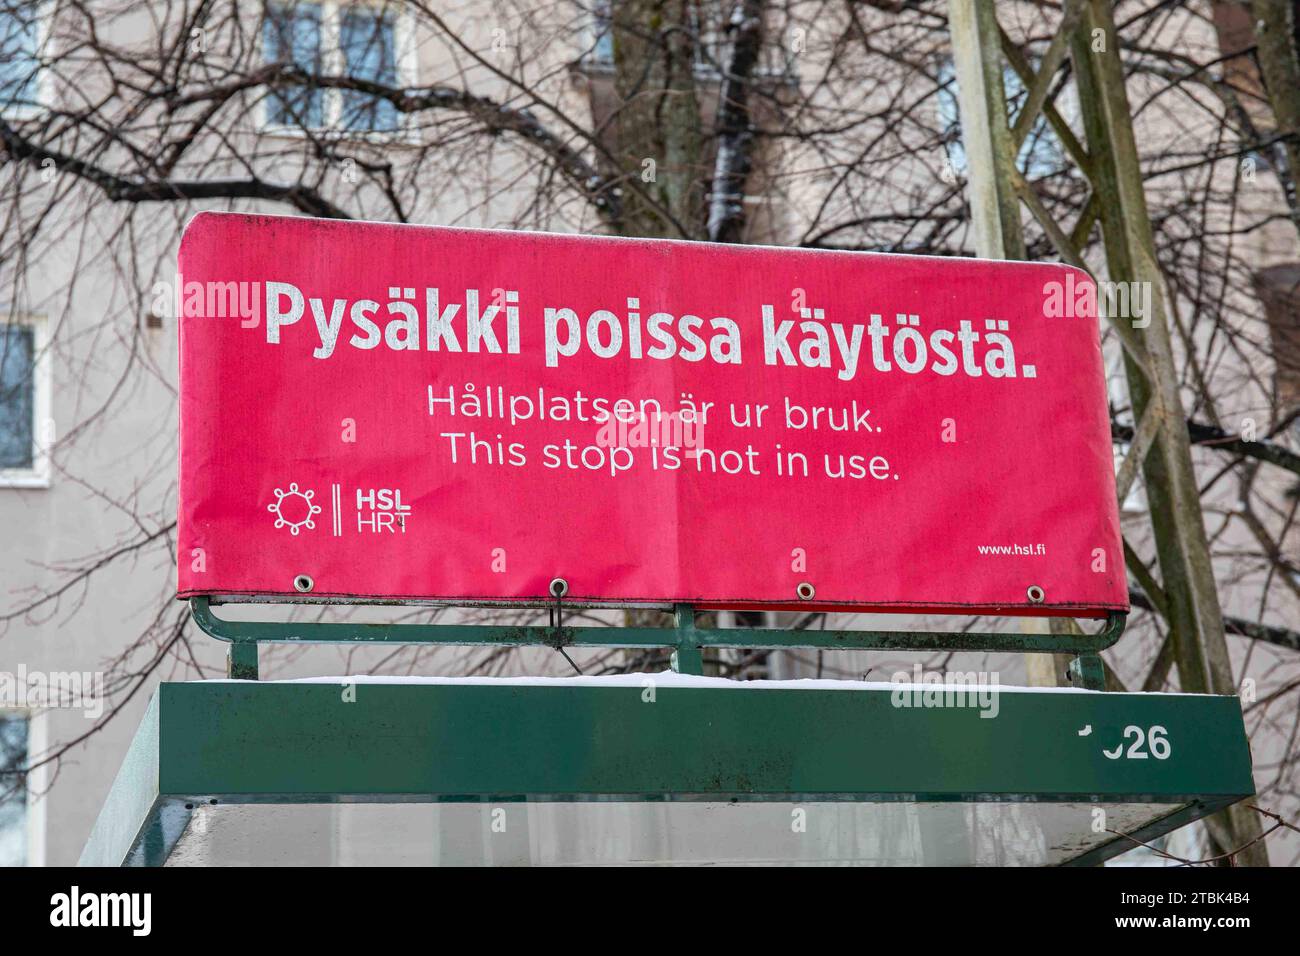 Pysäkki poissa käytöstä. Dieser Anschlag wird nicht verwendet. Schilder für die HSL-Bushaltestelle im Stadtteil Munkkiniemi in Helsinki, Finnland. Stockfoto